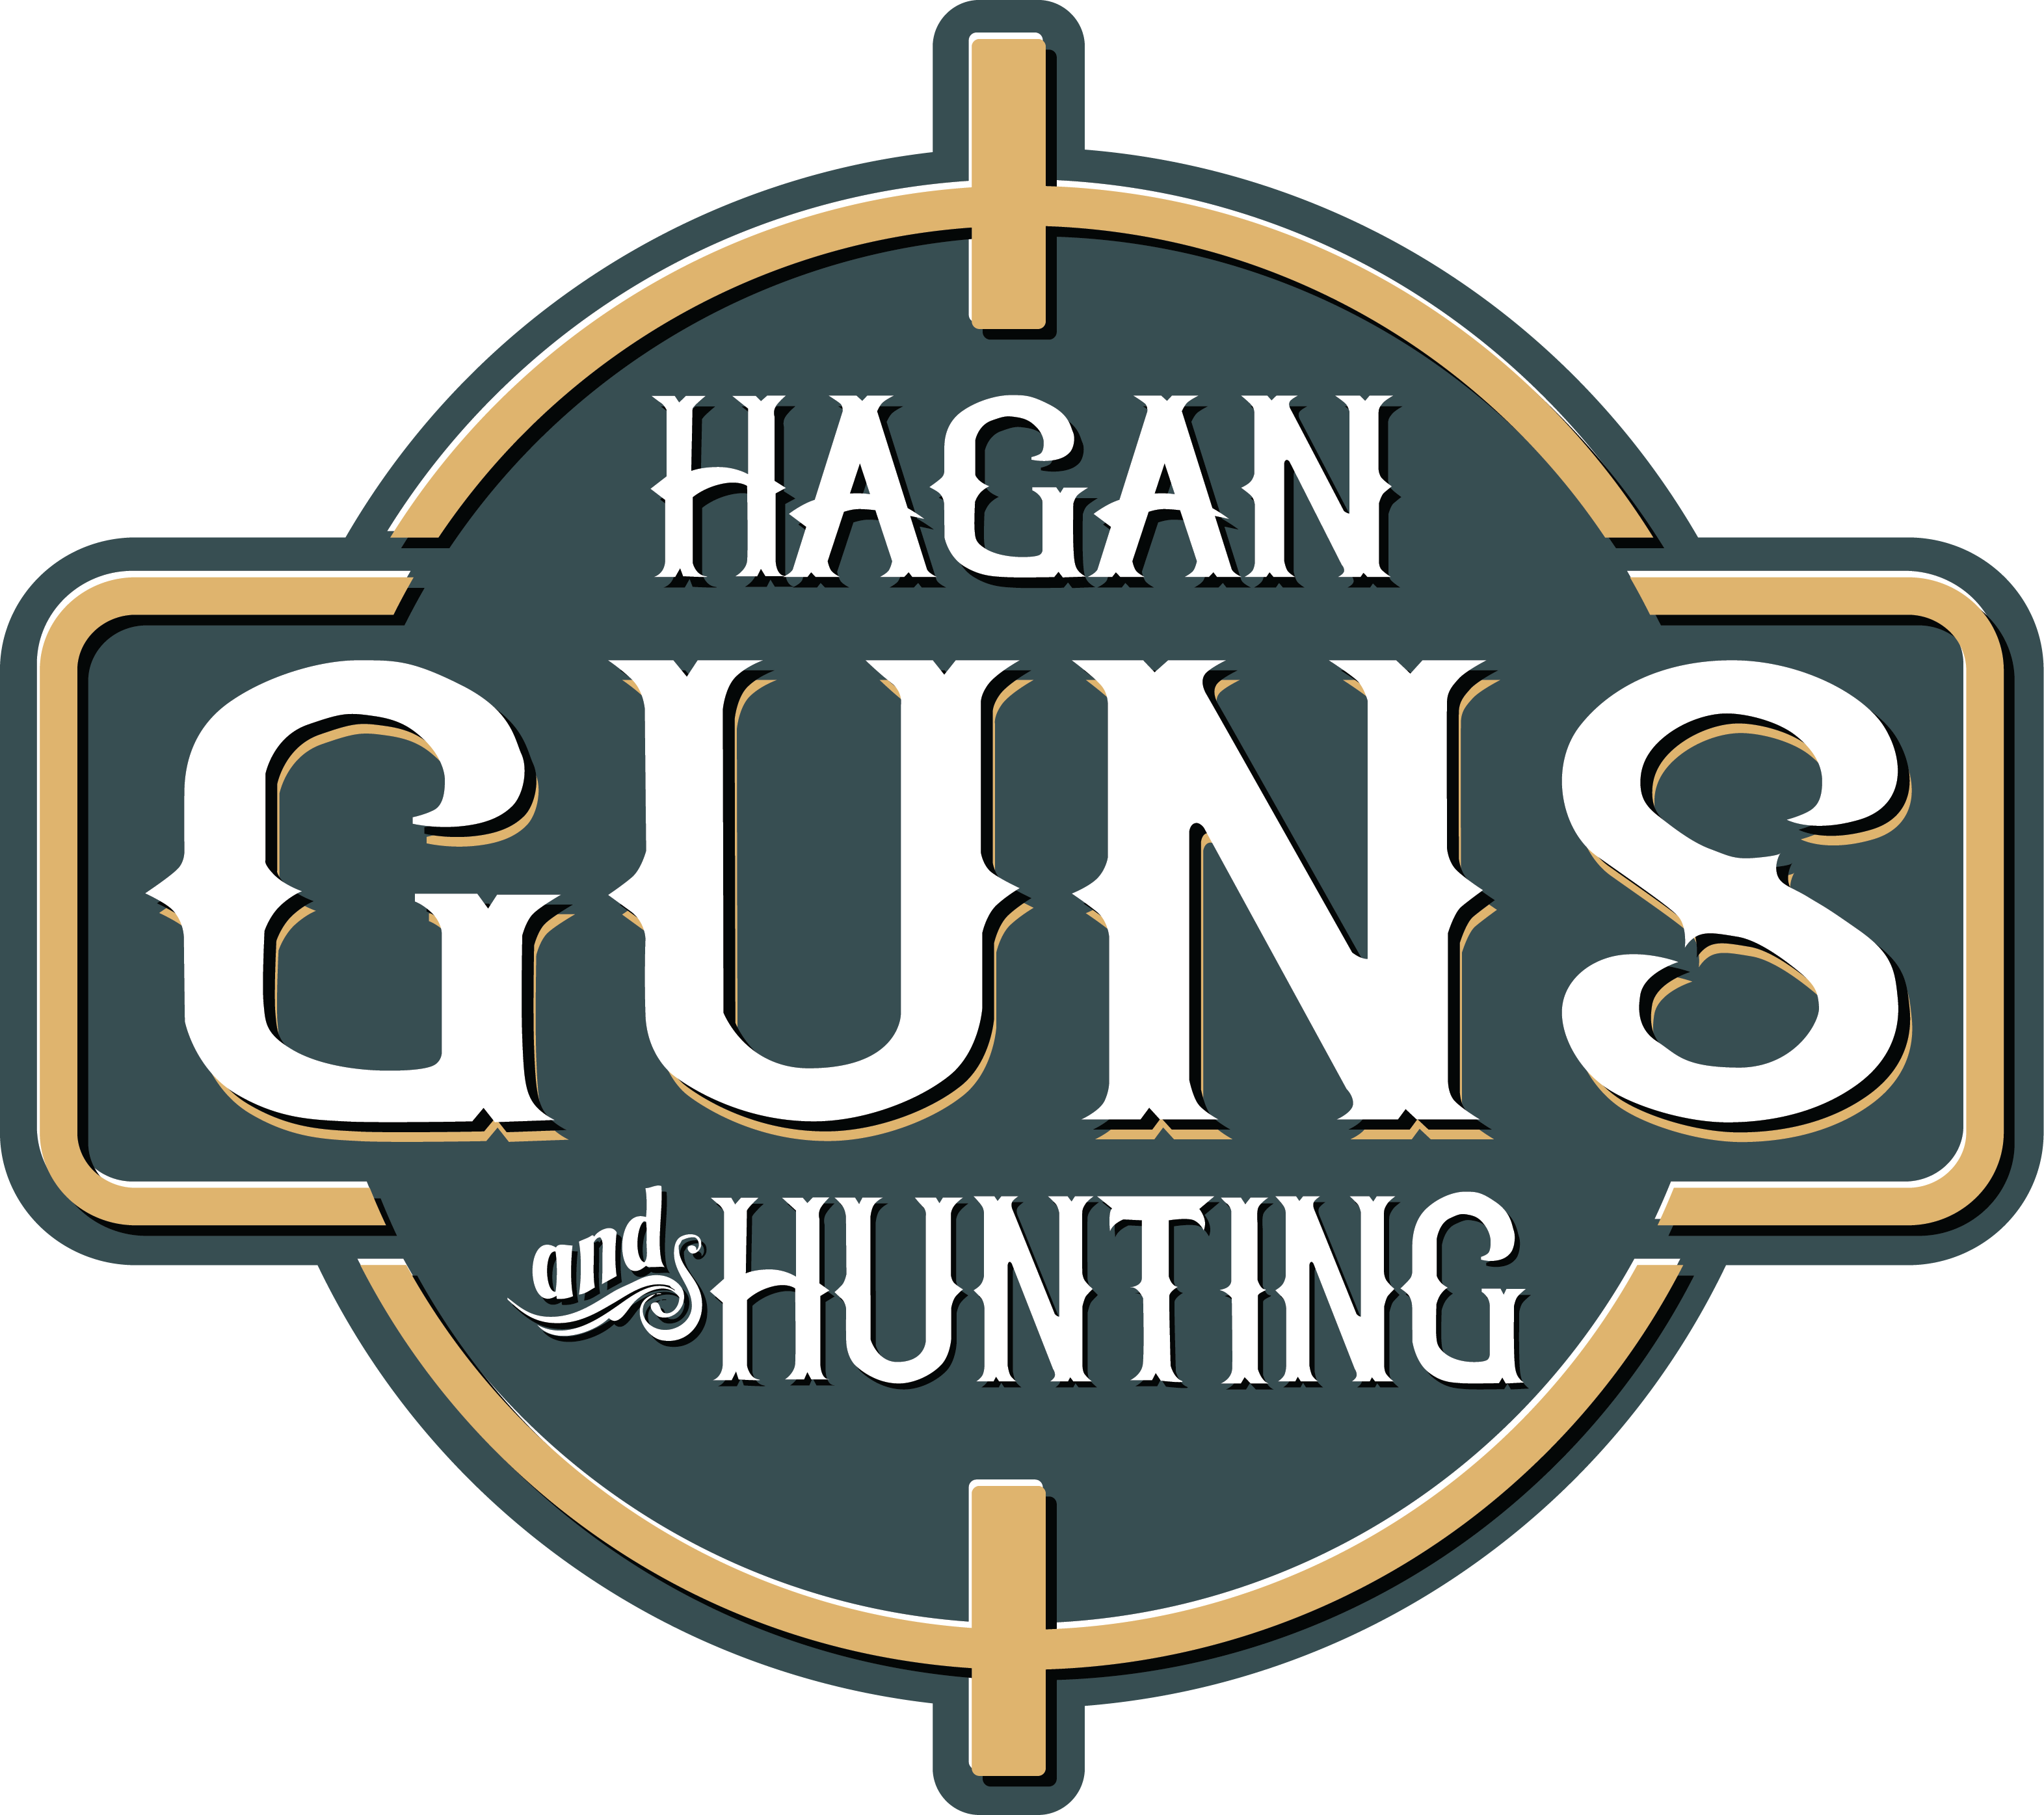 Hagan Guns and Hunting logo